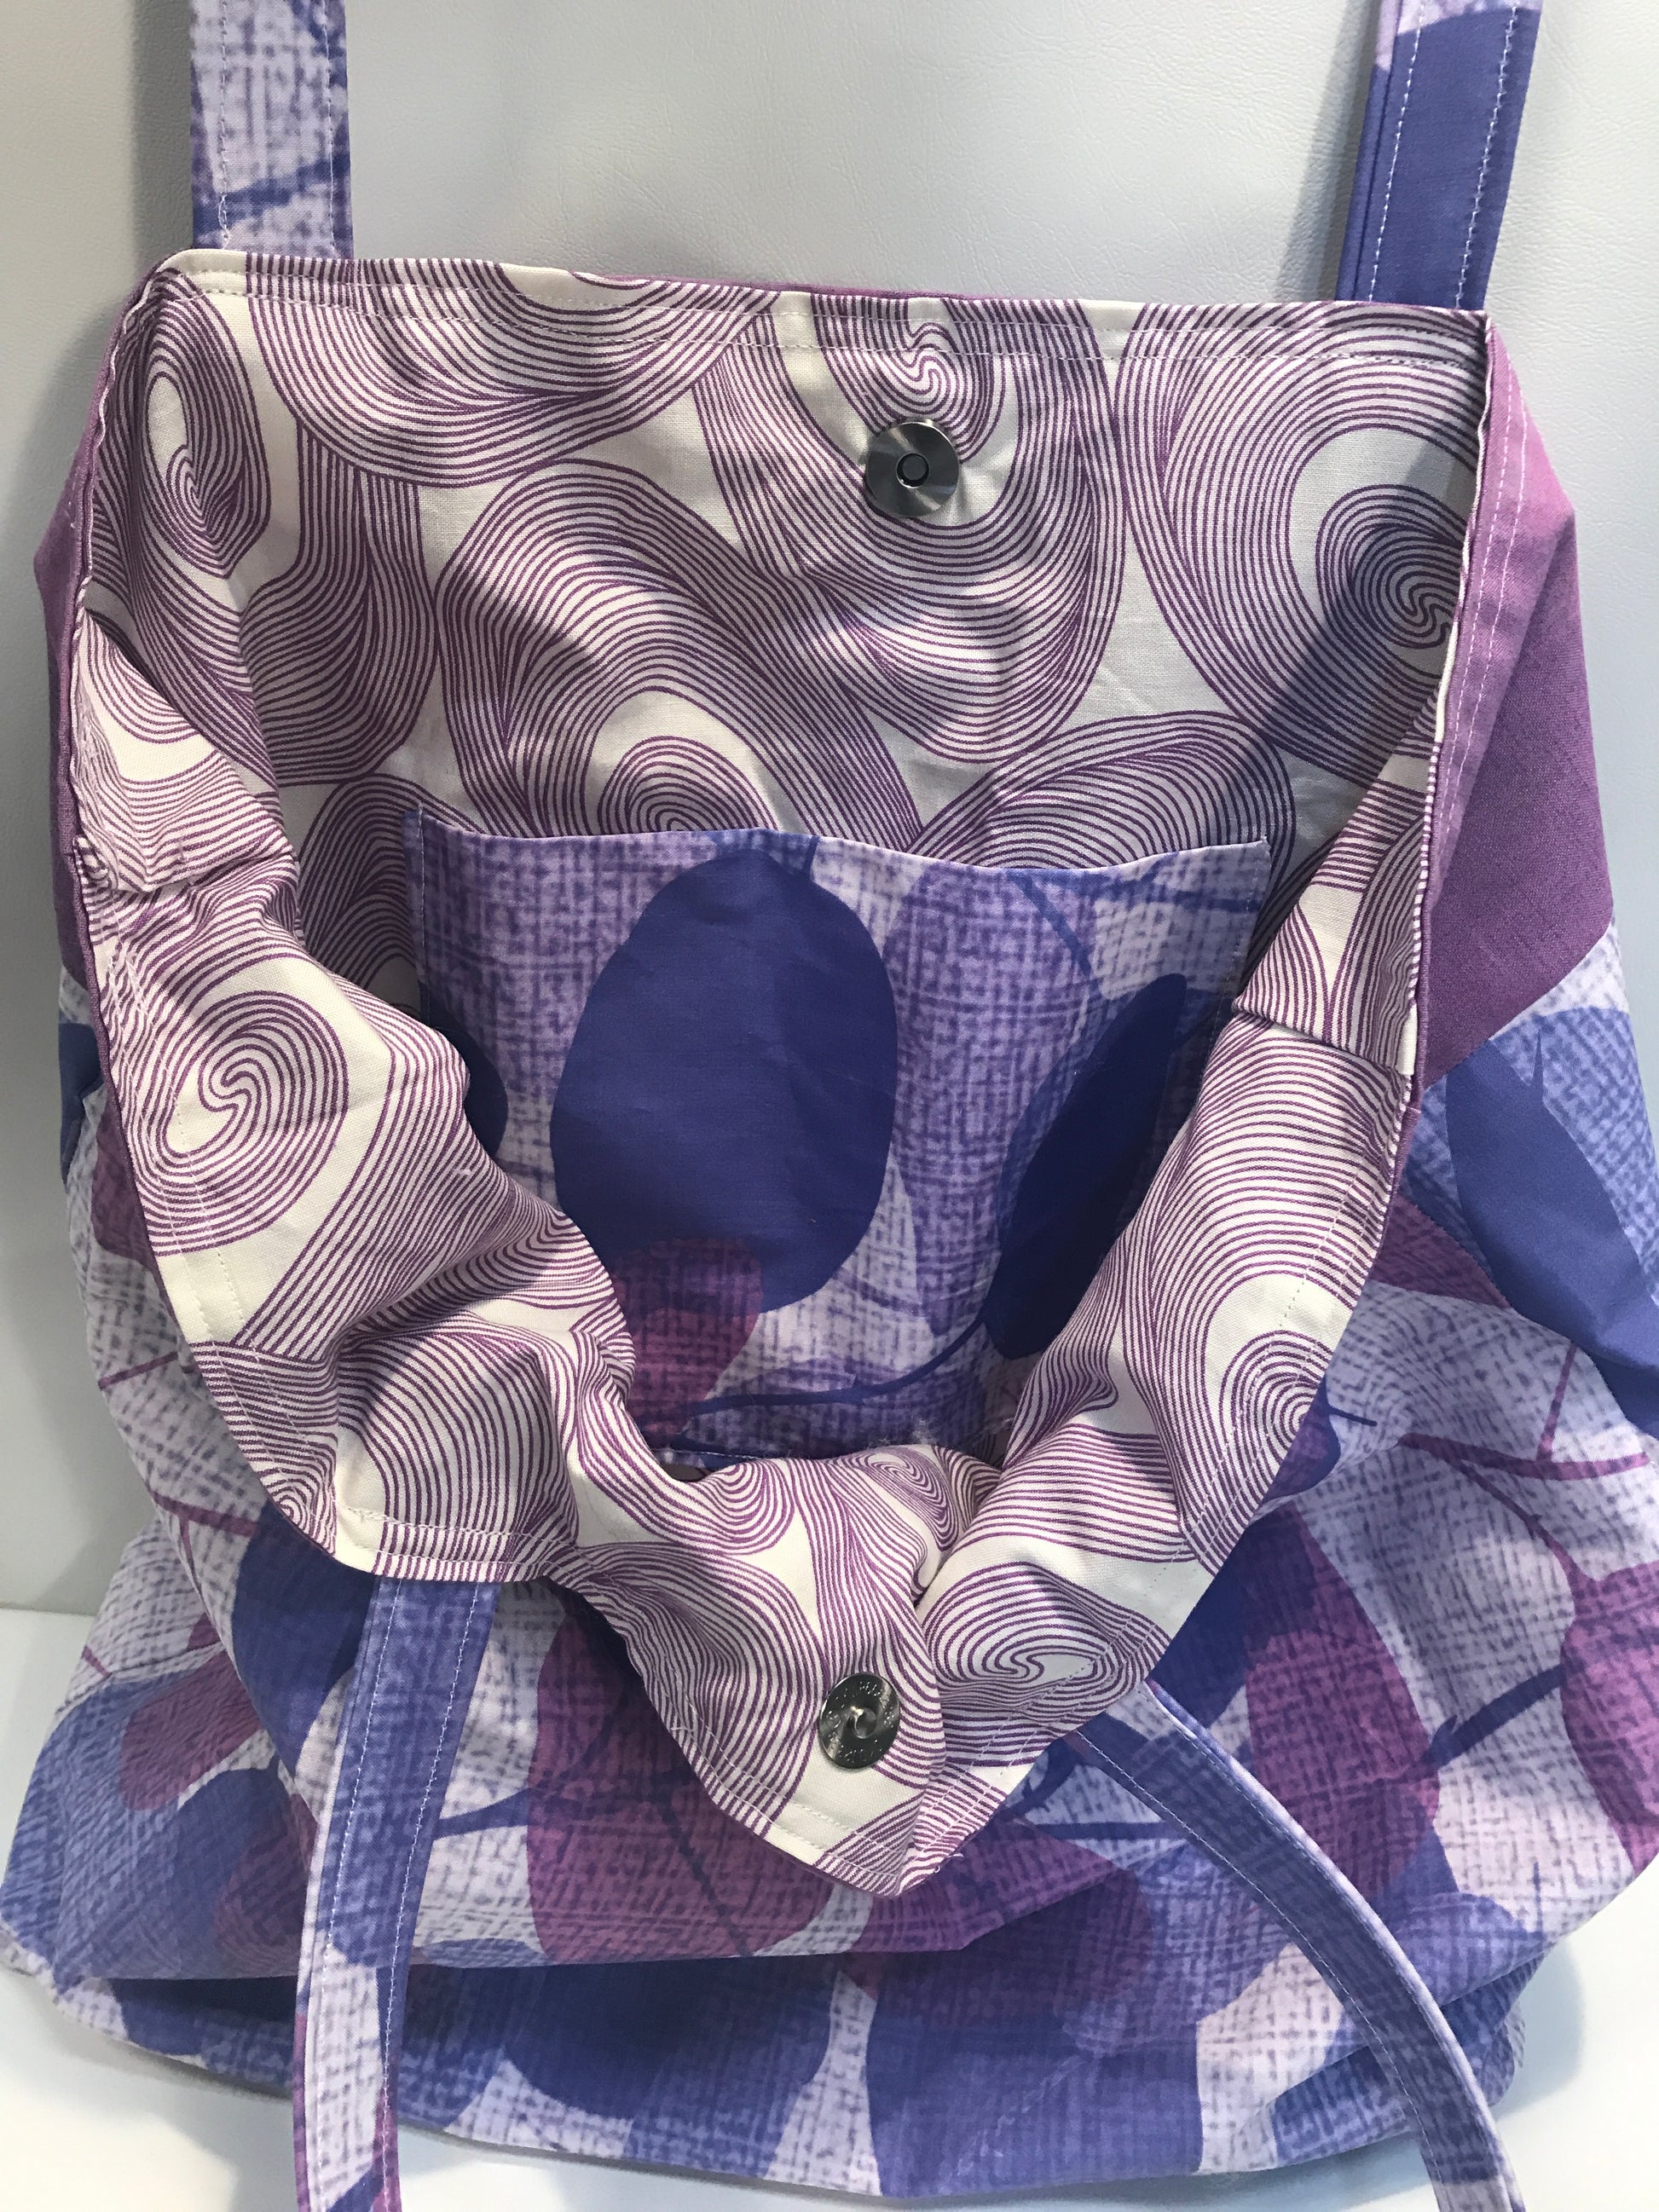 Purple Leaves Okinawa Tote - InRugCo Studio & Gift Shop